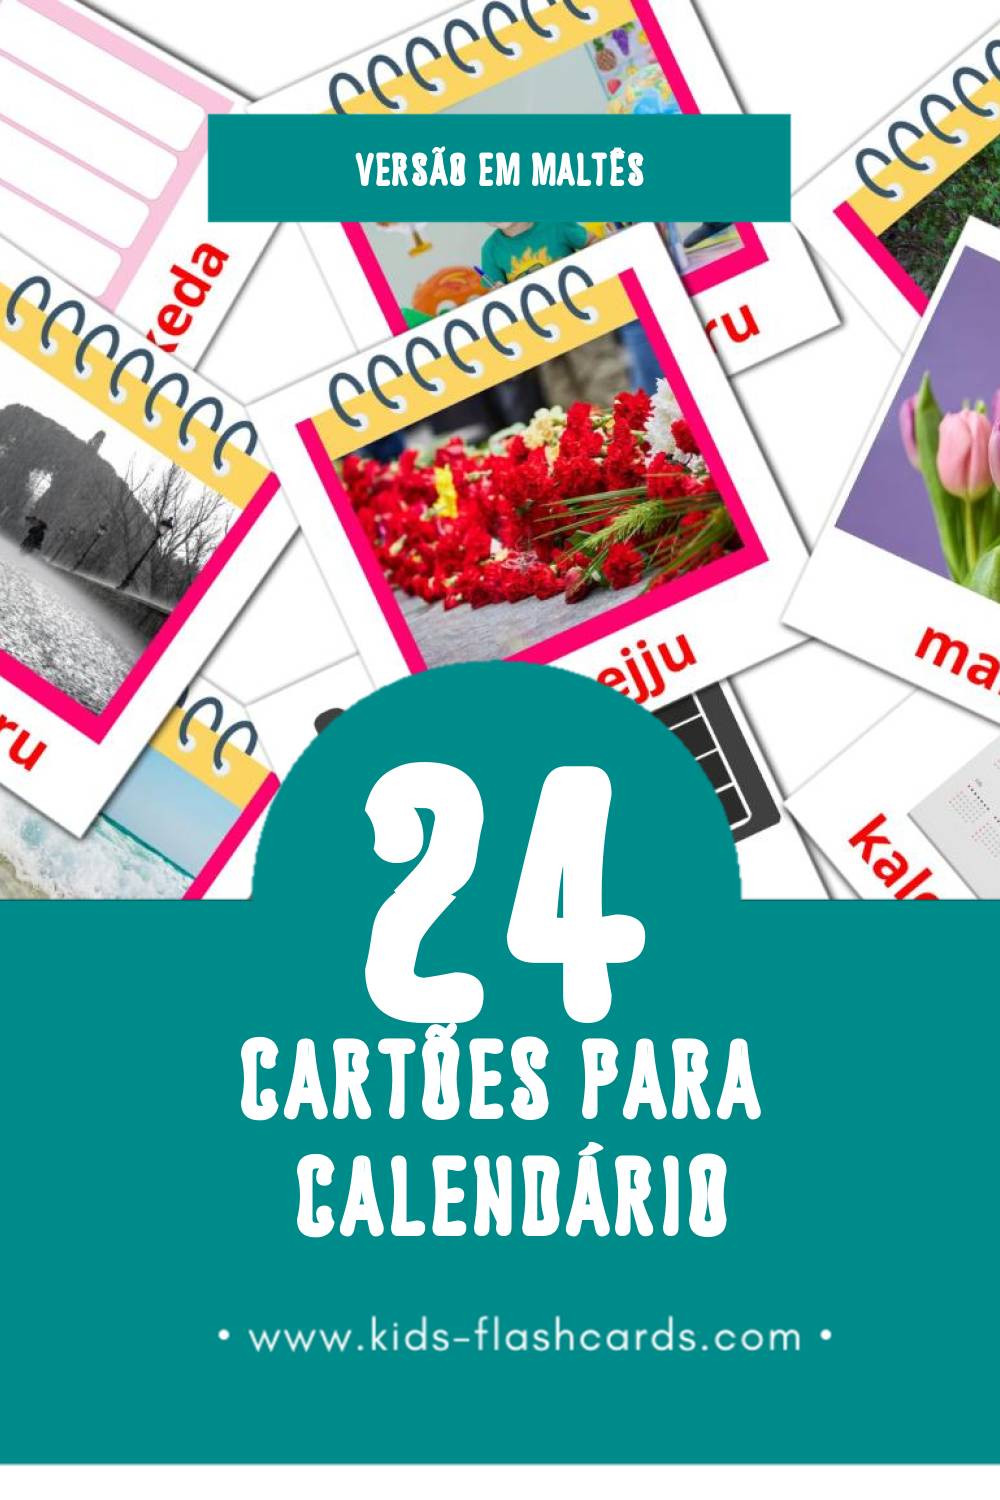 Flashcards de Kalendarju Visuais para Toddlers (24 cartões em Maltês)